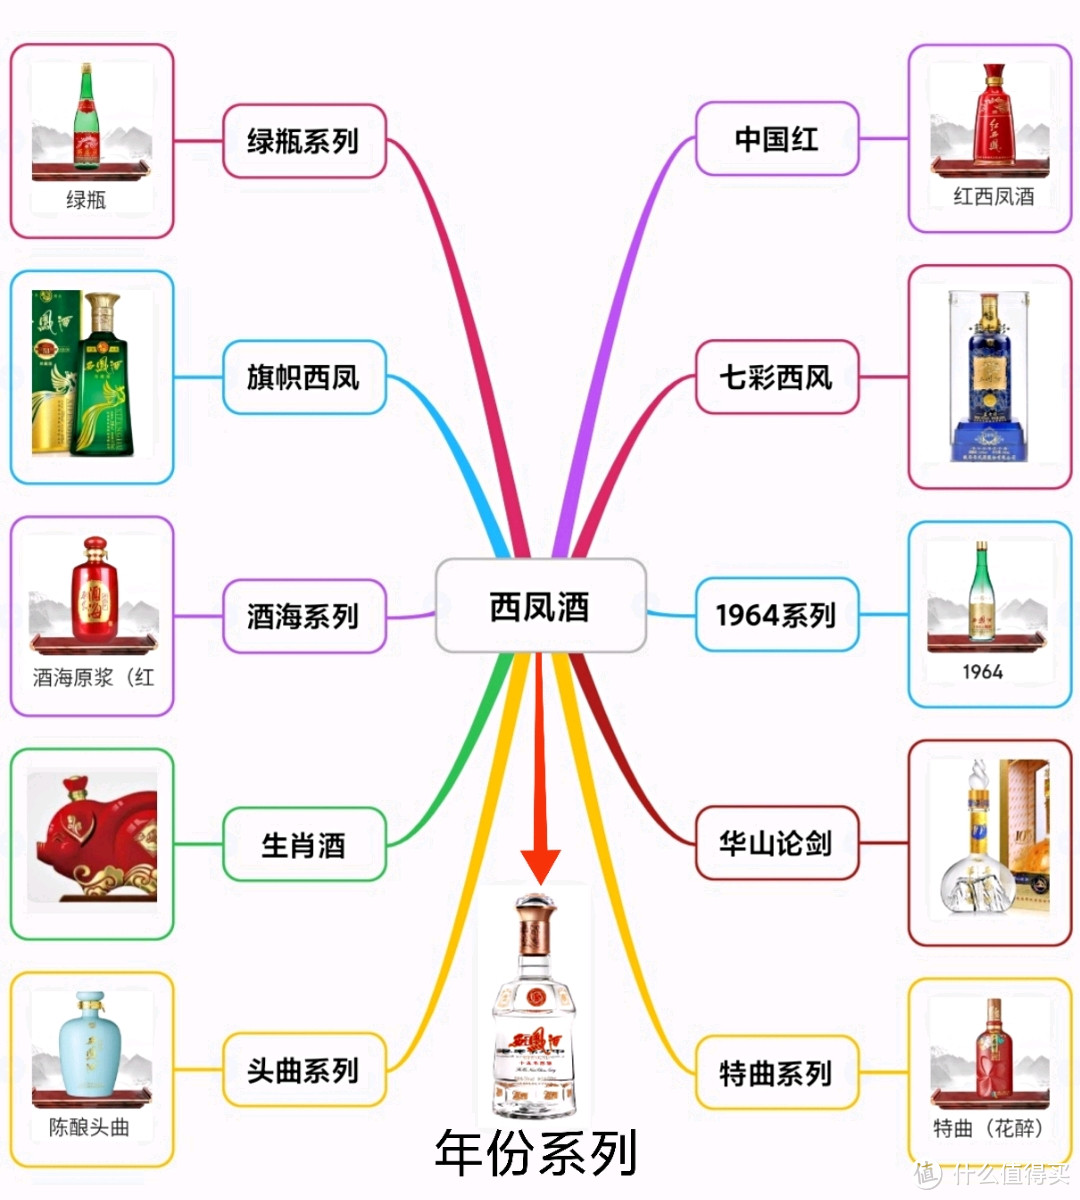 西凤酒产品矩阵